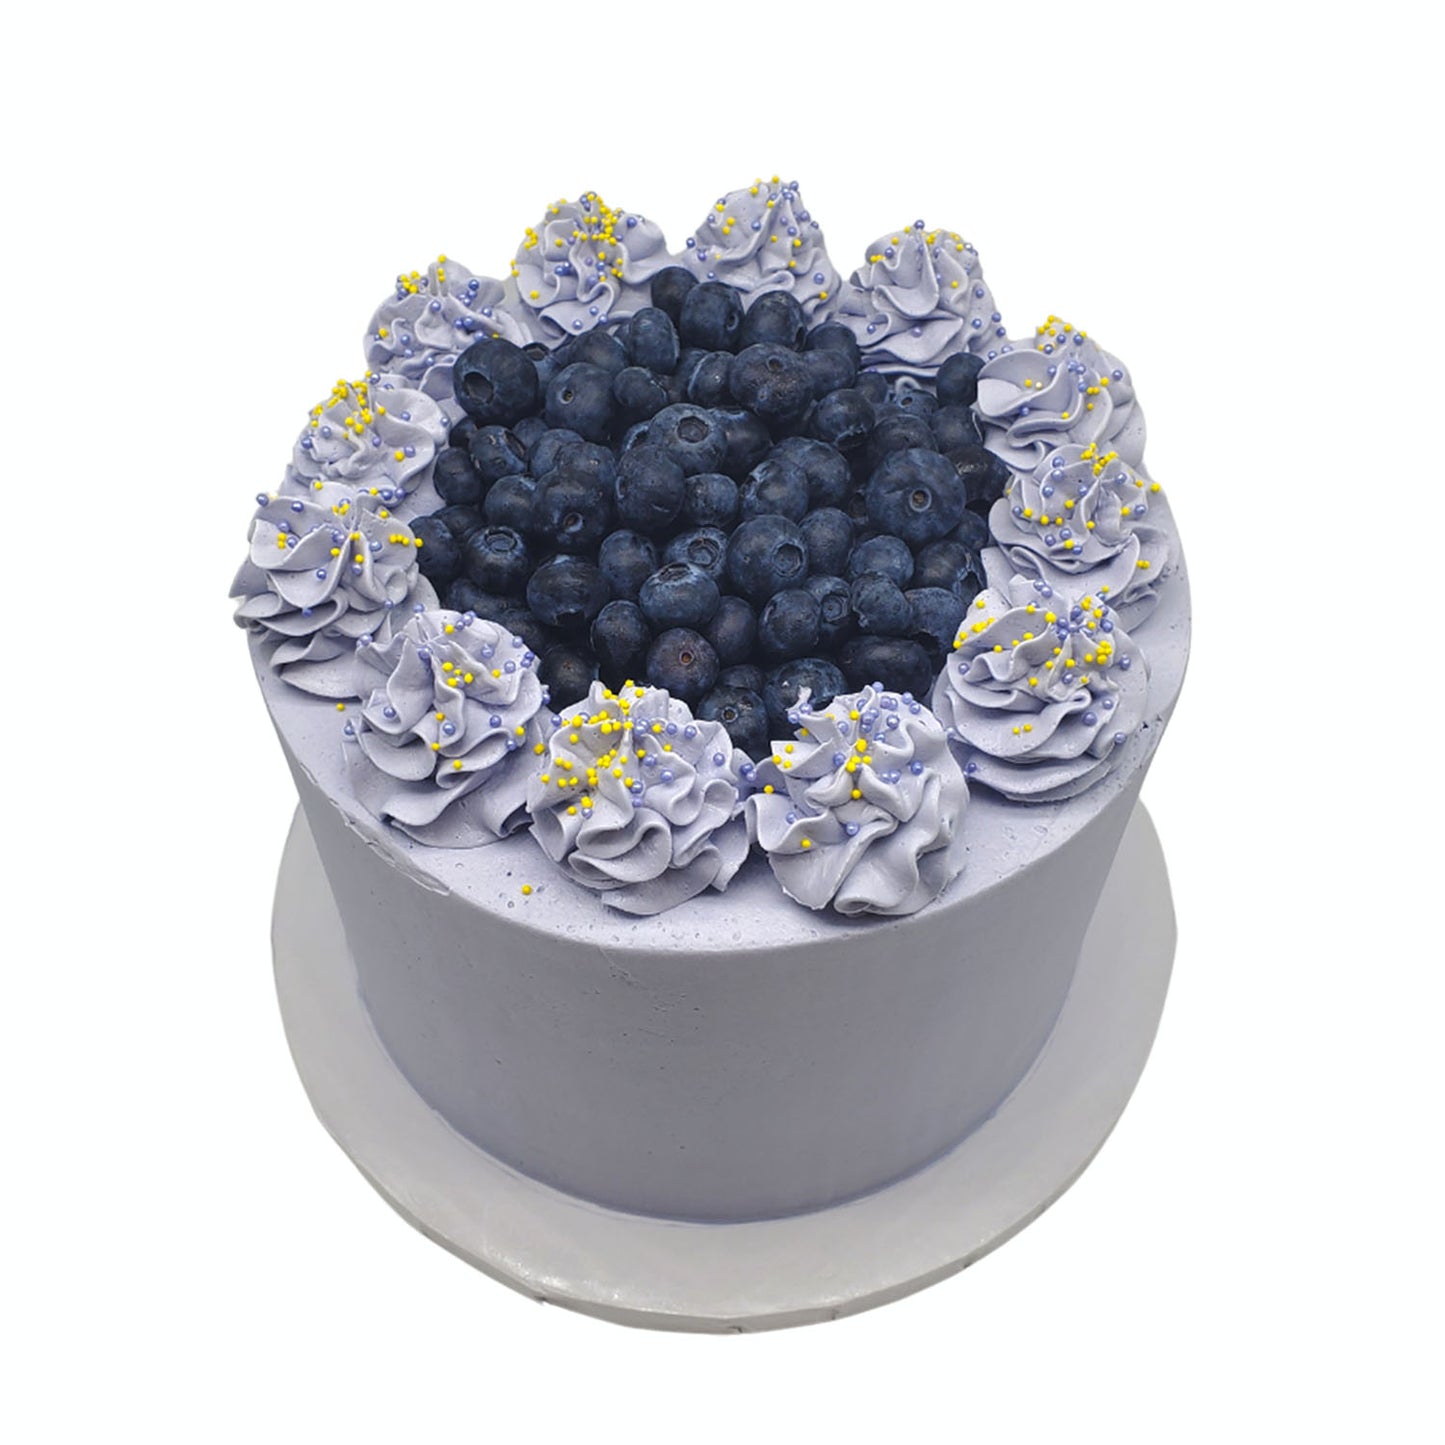 Lemon Blueberry Honey Lavender Cake